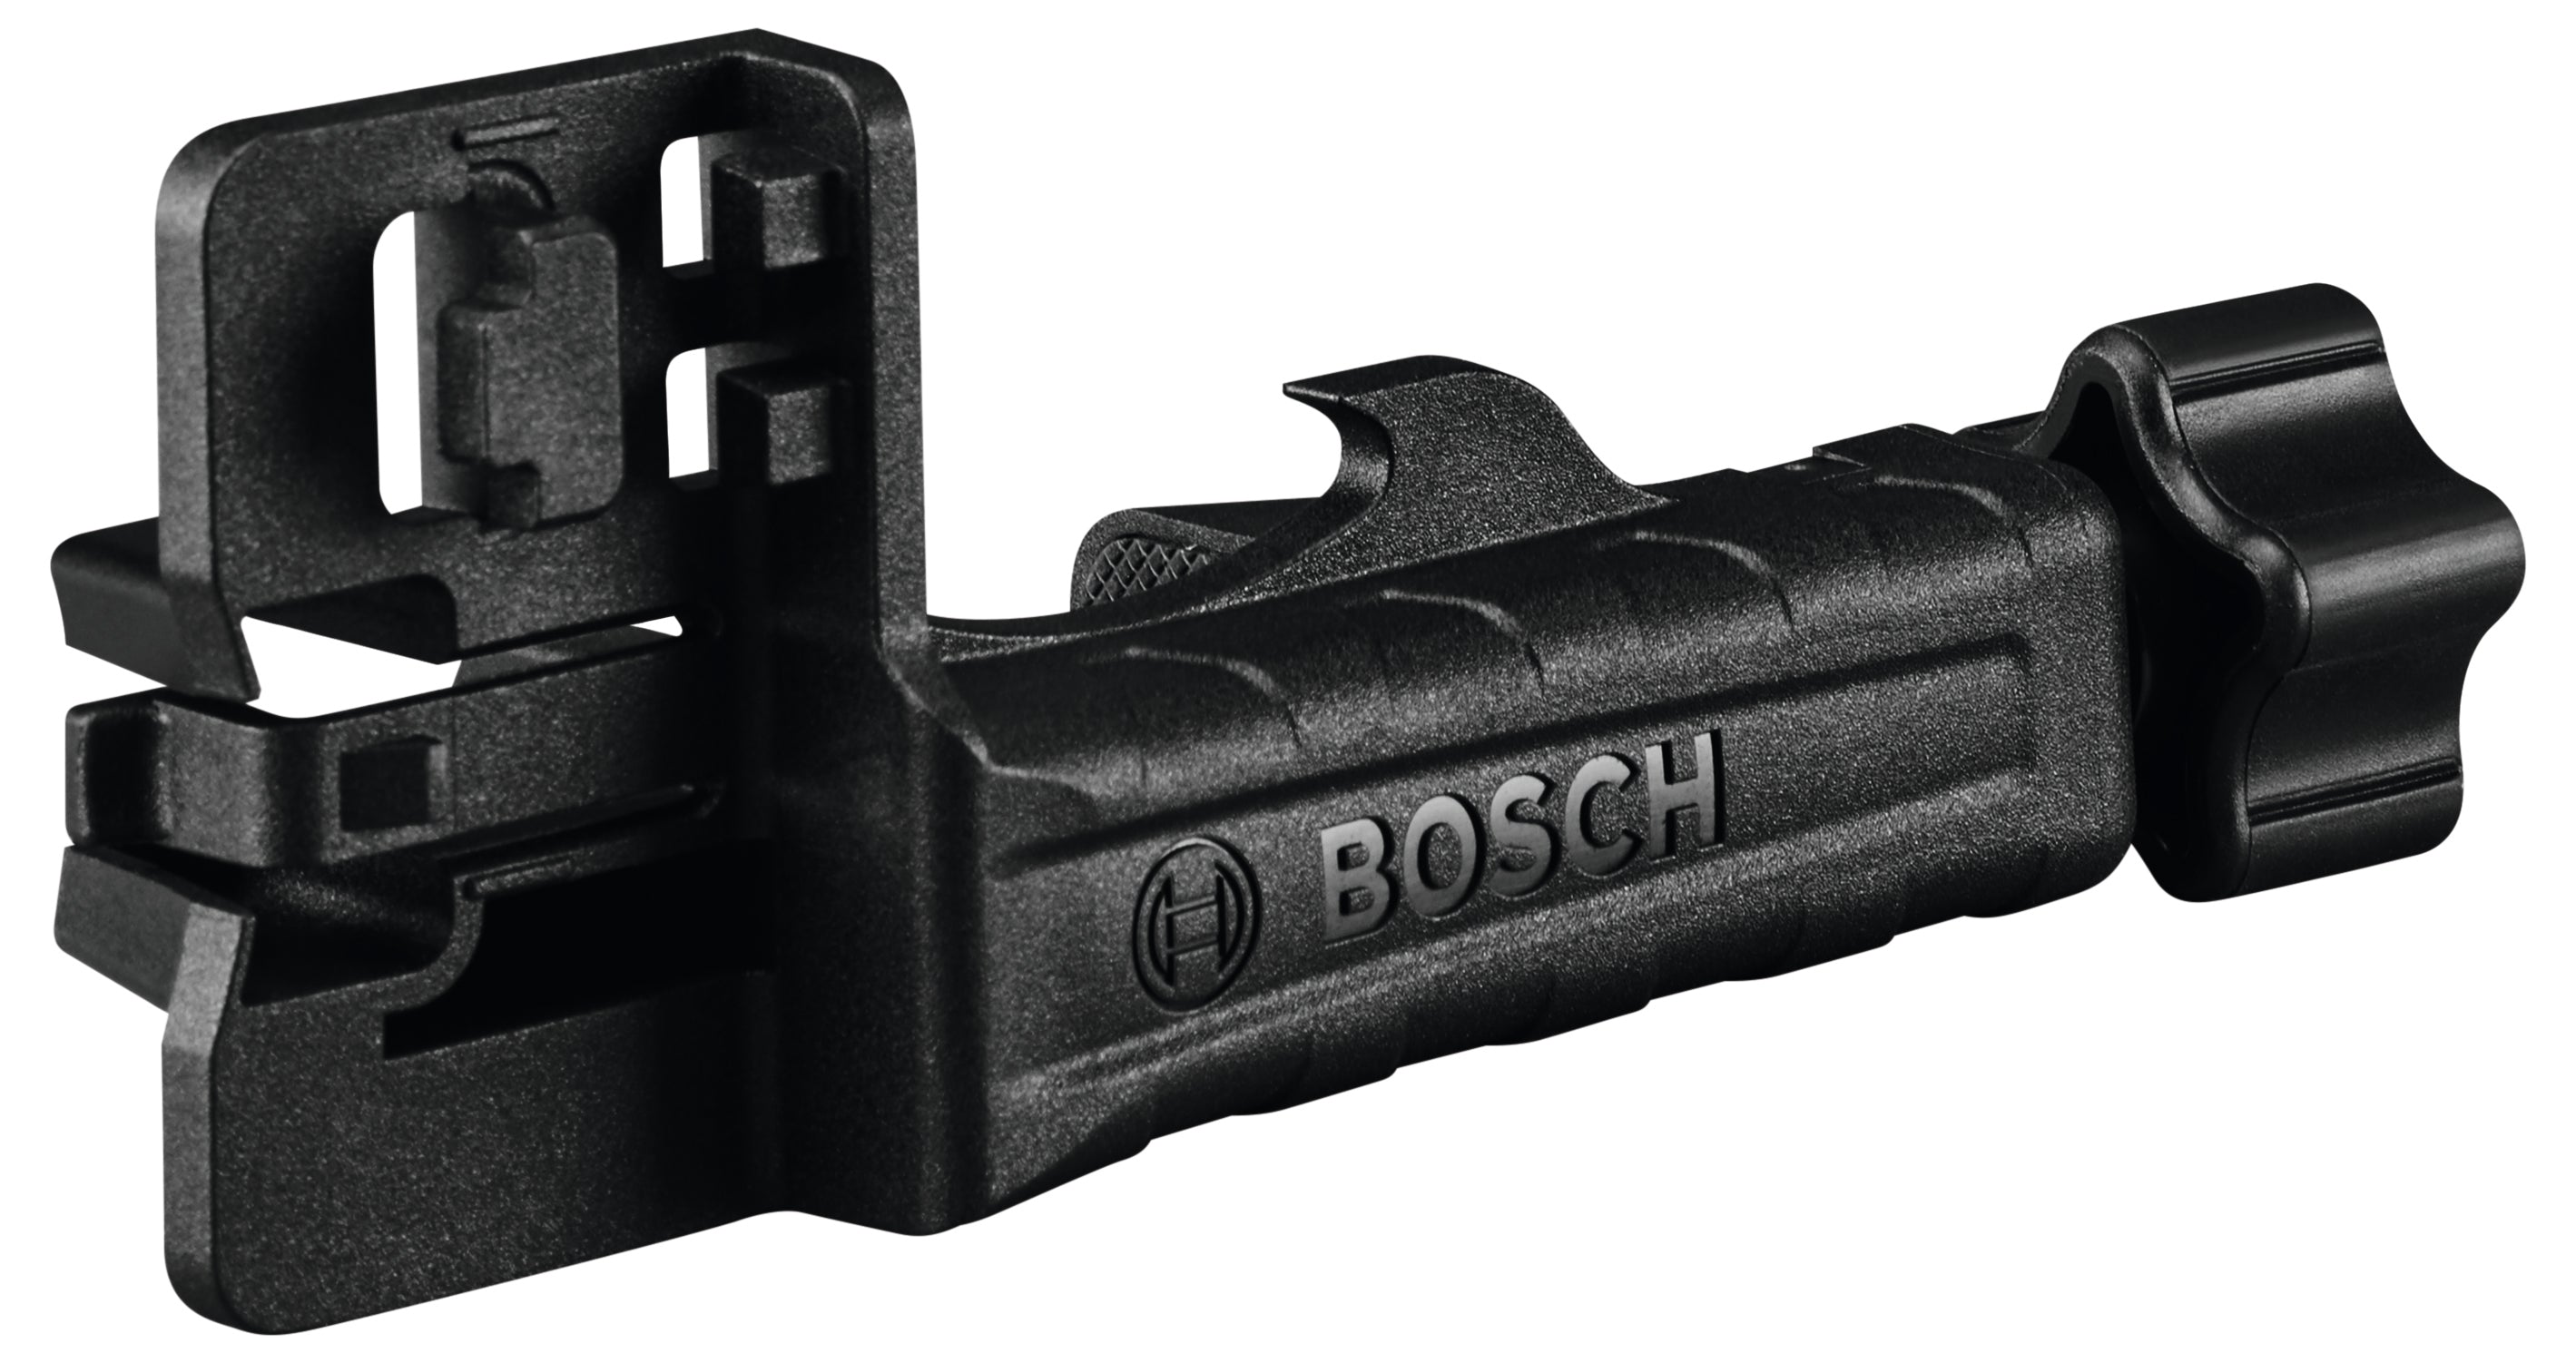 Bosch GRL2000-40HVK - REVOLVE2000 Self-Leveling Horizontal/Vertical Rotary Laser Kit